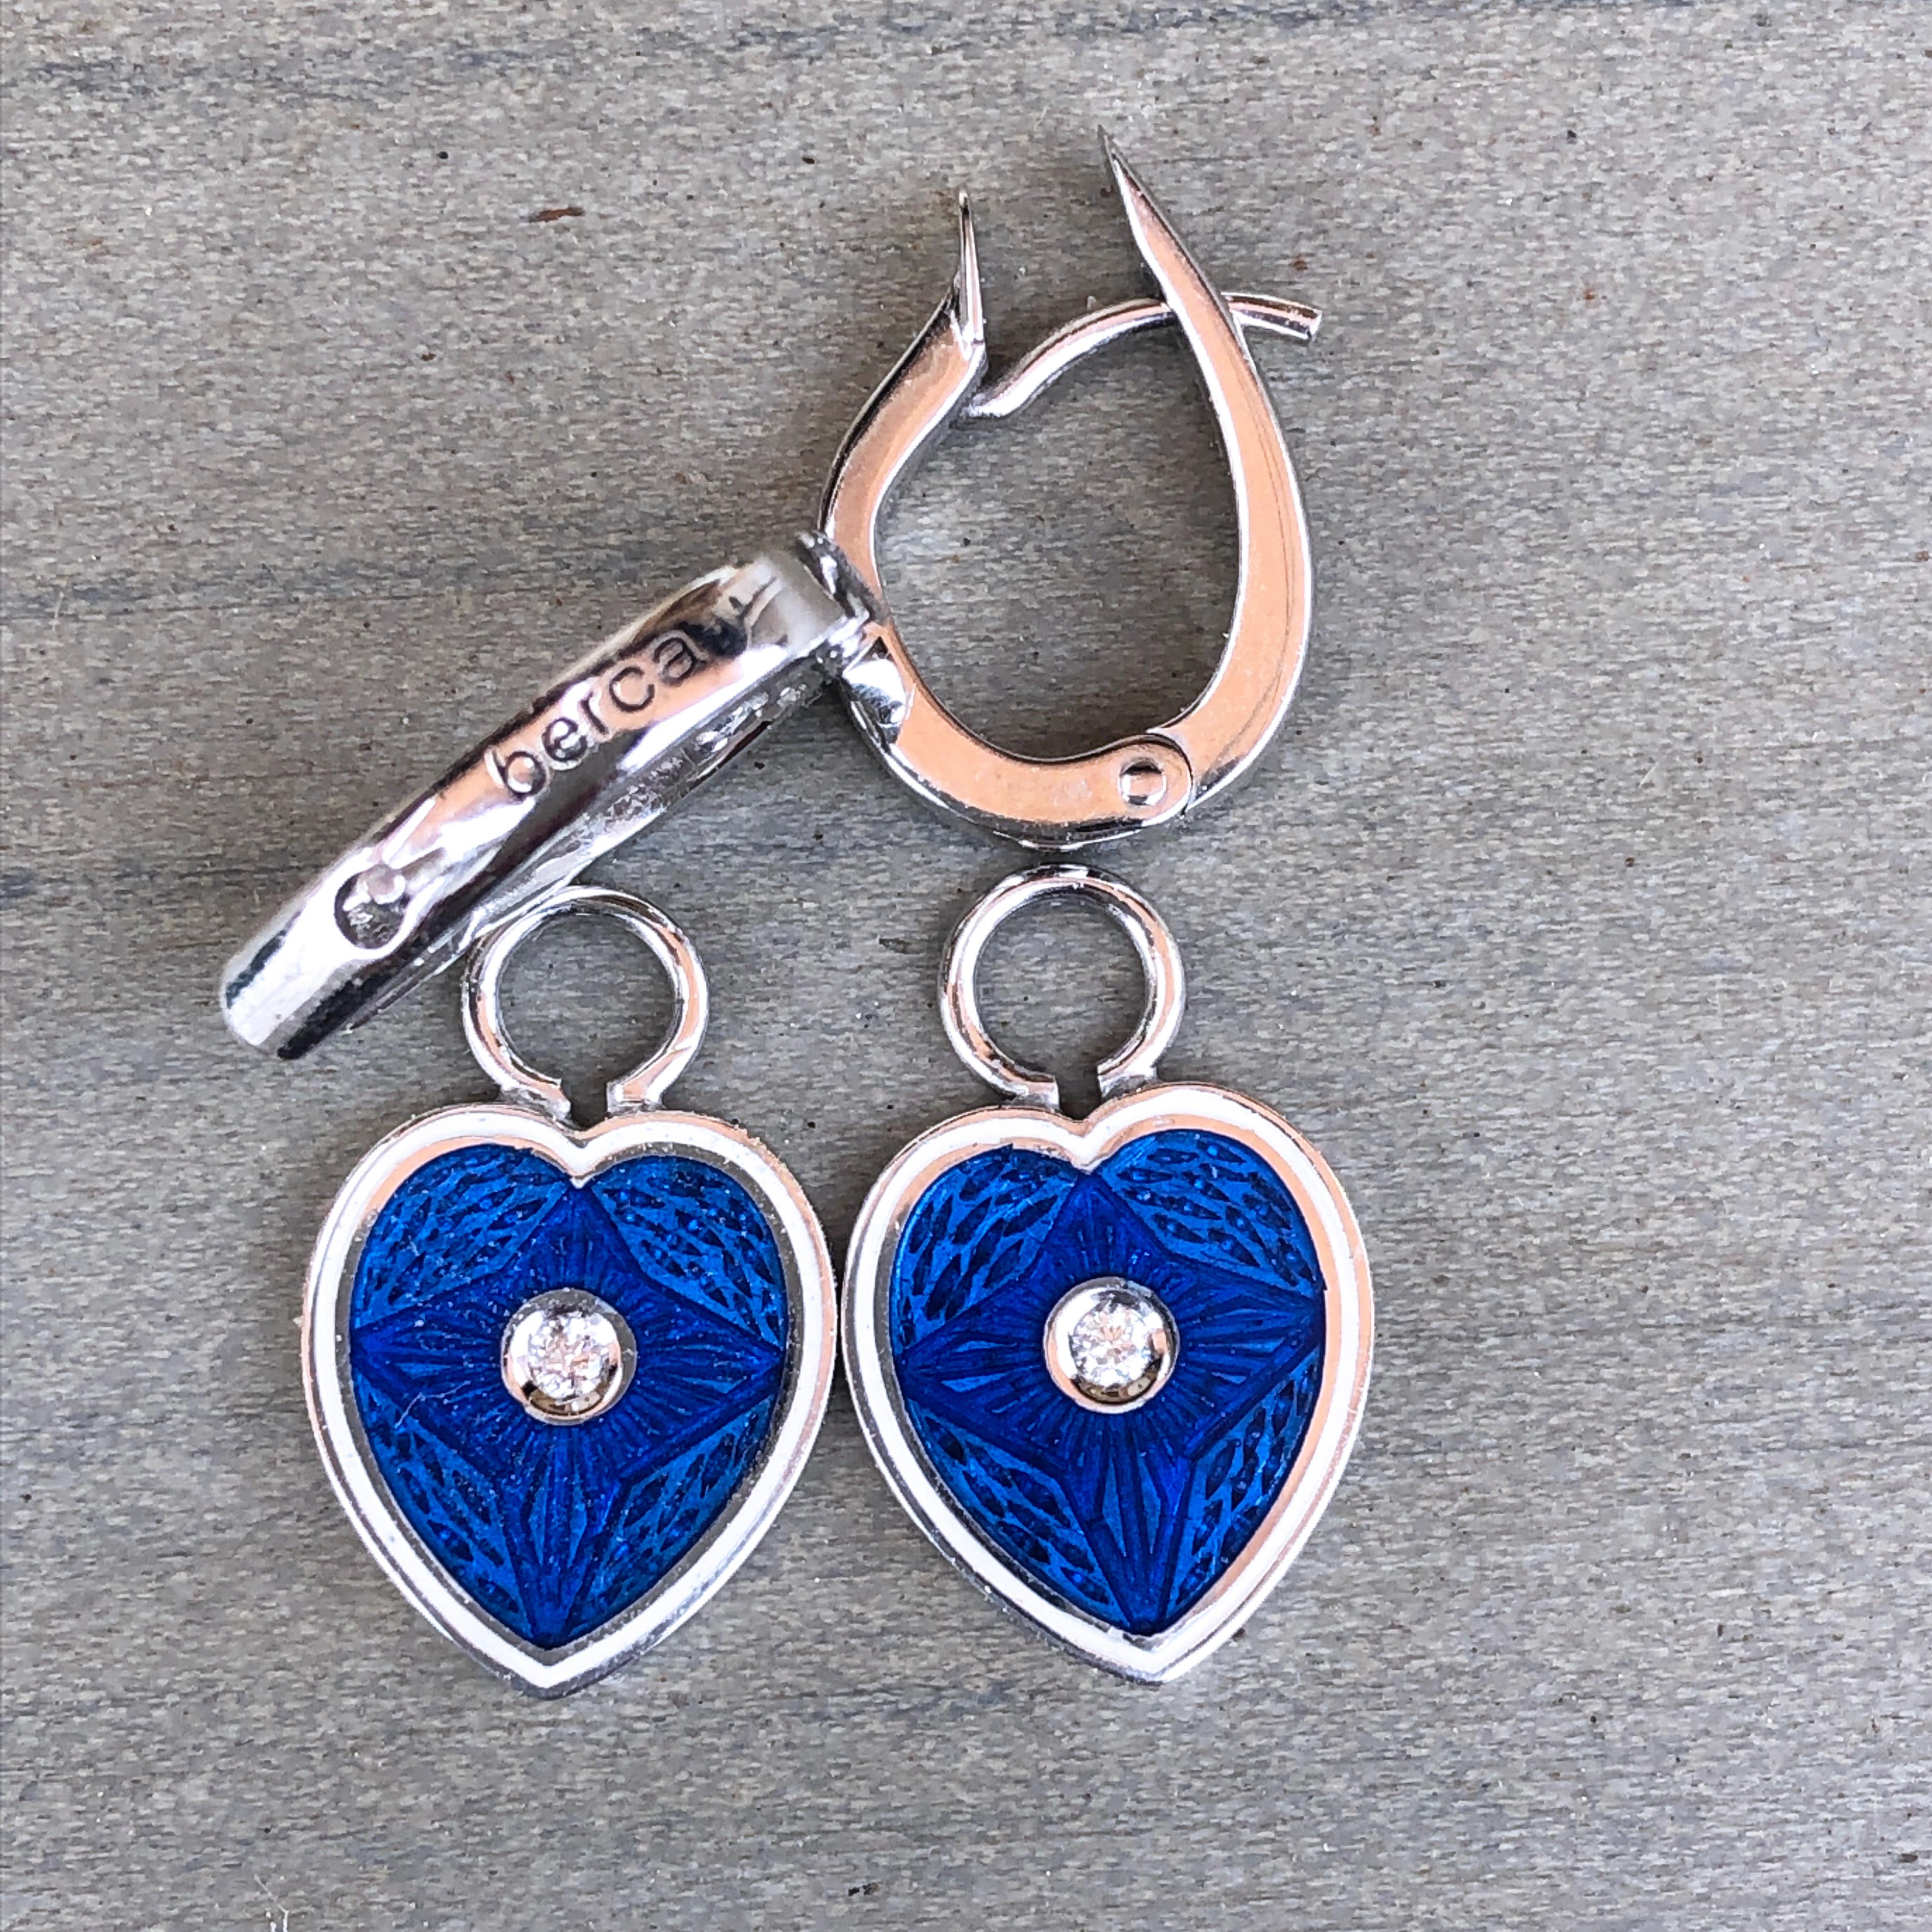 blue heart shaped earrings